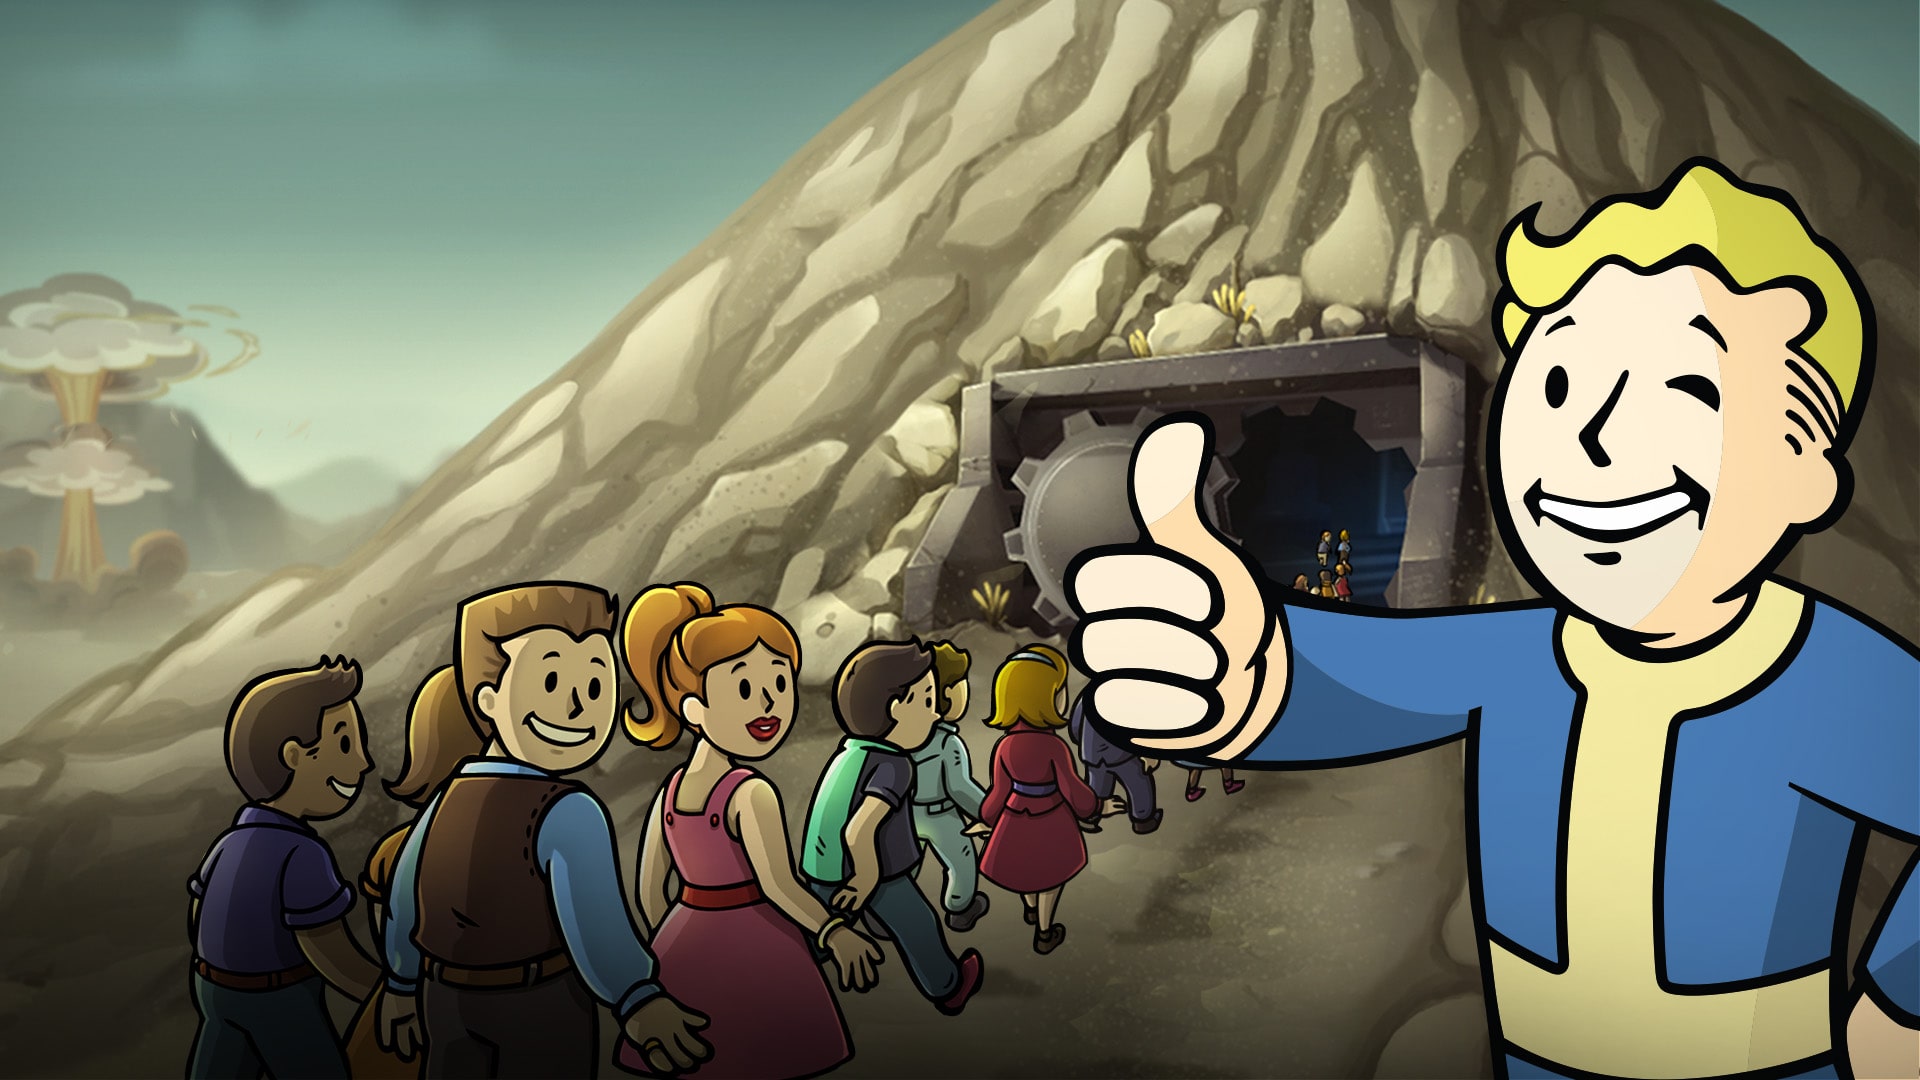 Fallout Shelter: Geladeira de Nuka-Cola Quantum